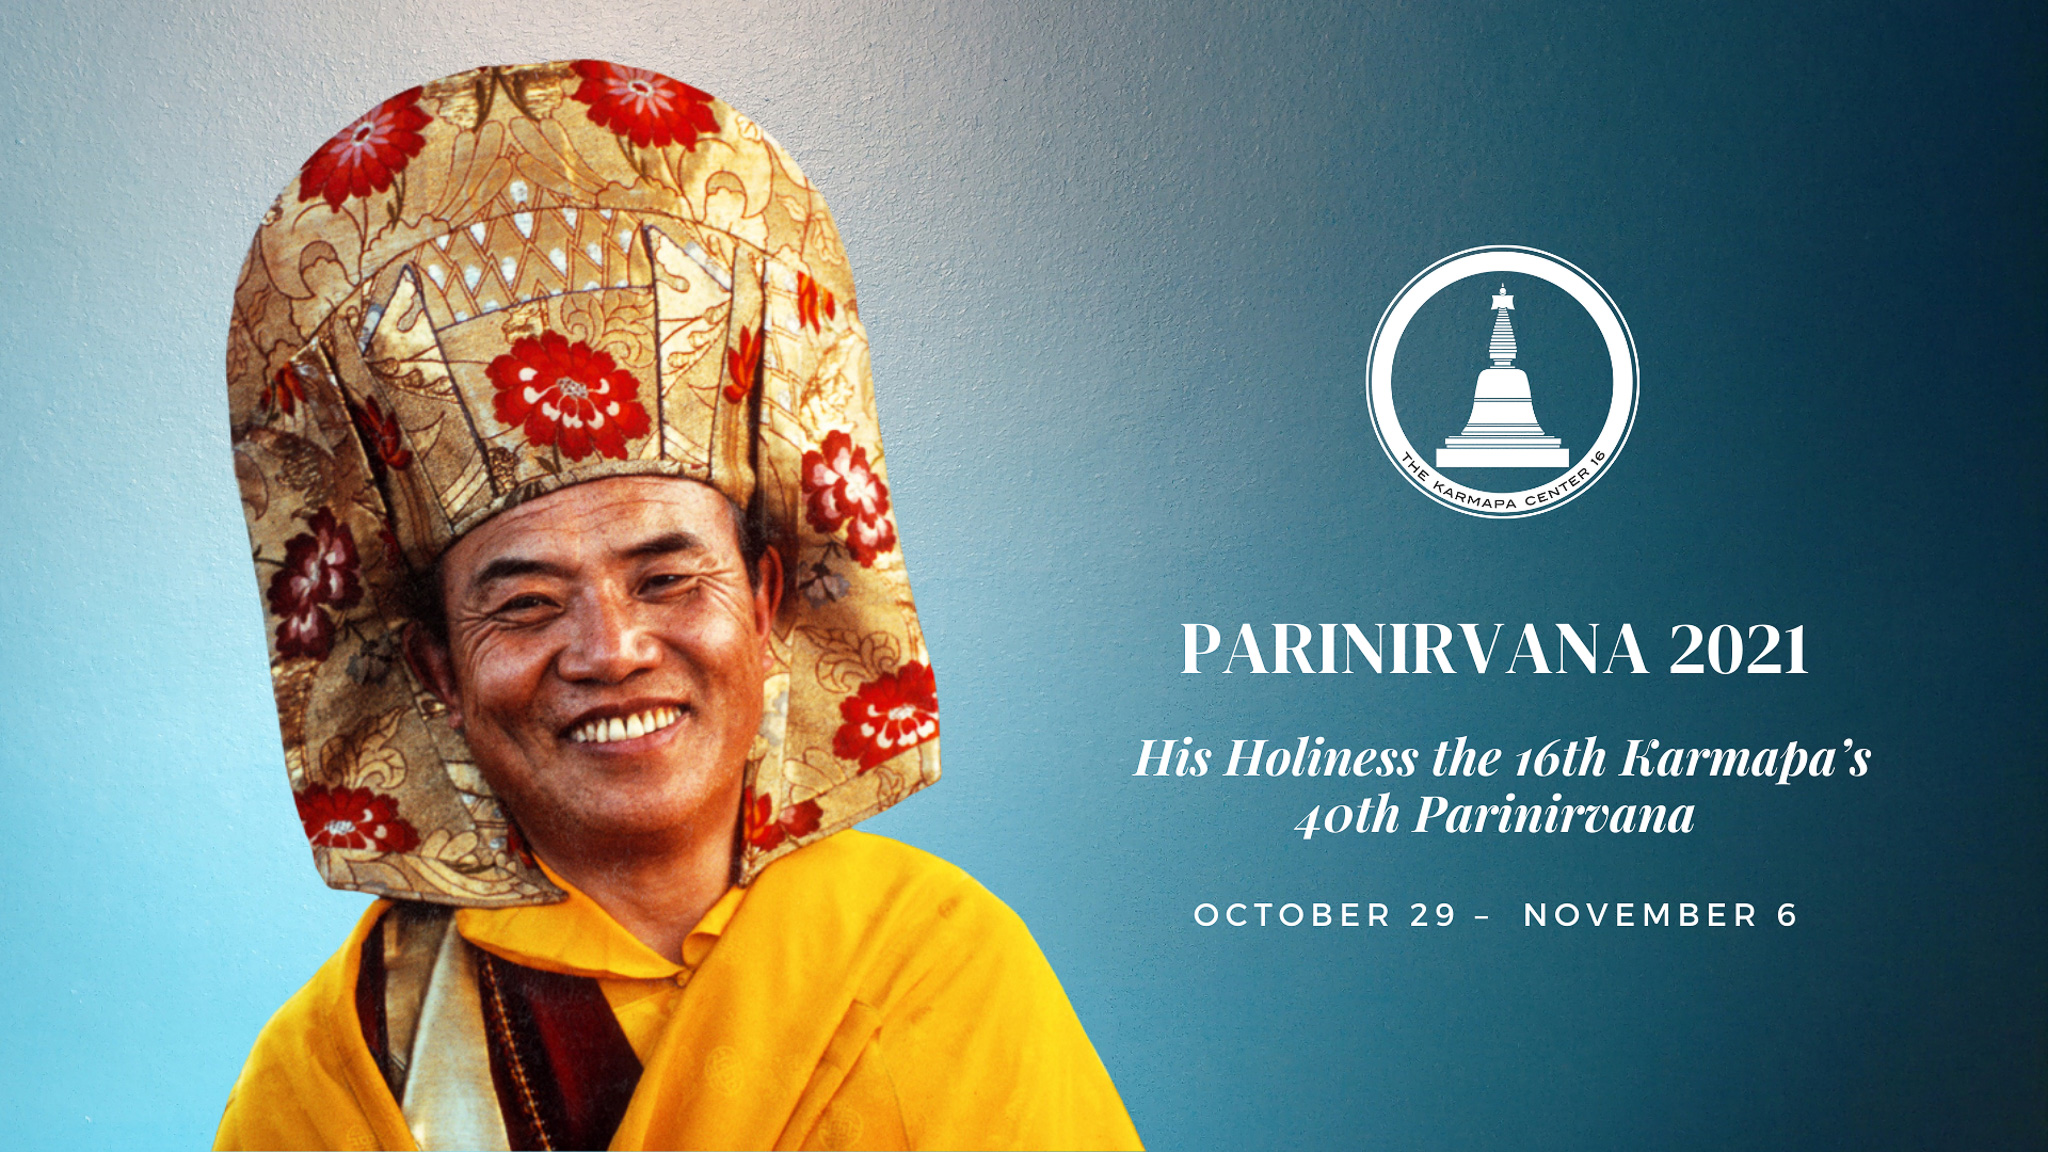 Obchody 40. rocznicy parinirwany Szesnastego Karmapy